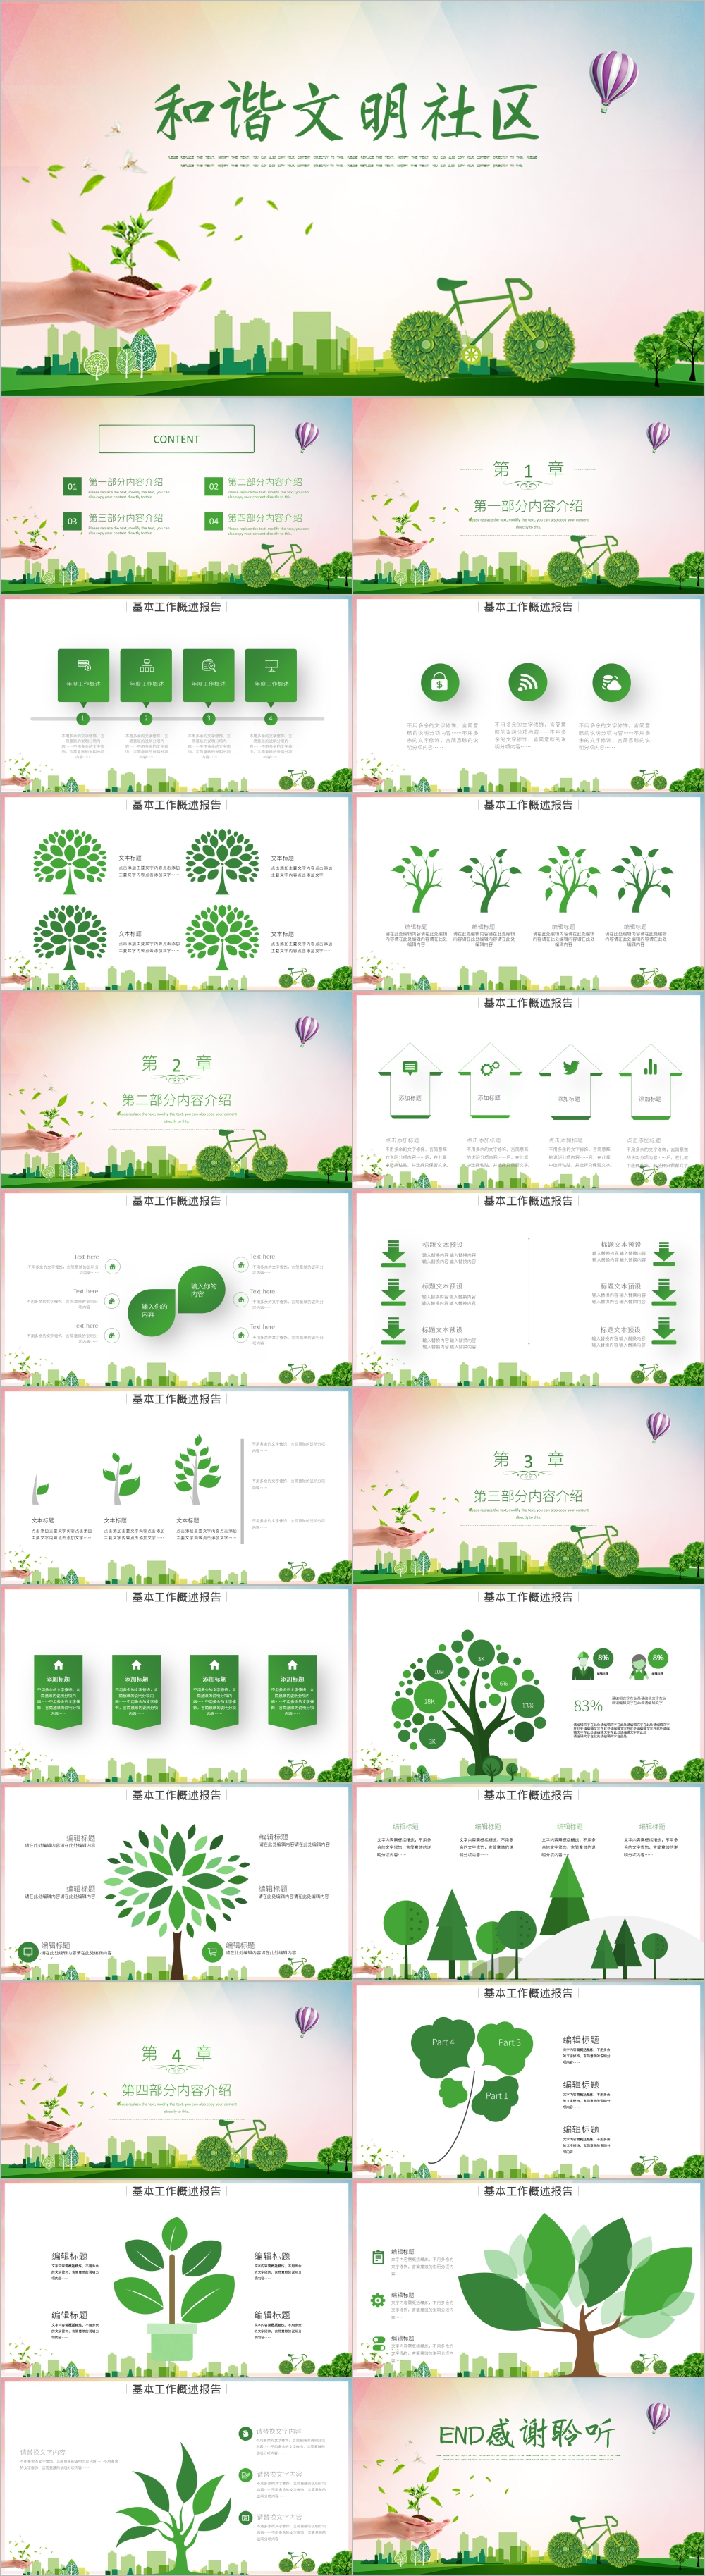 绿色健康保护环境和谐文明社区ppt模板